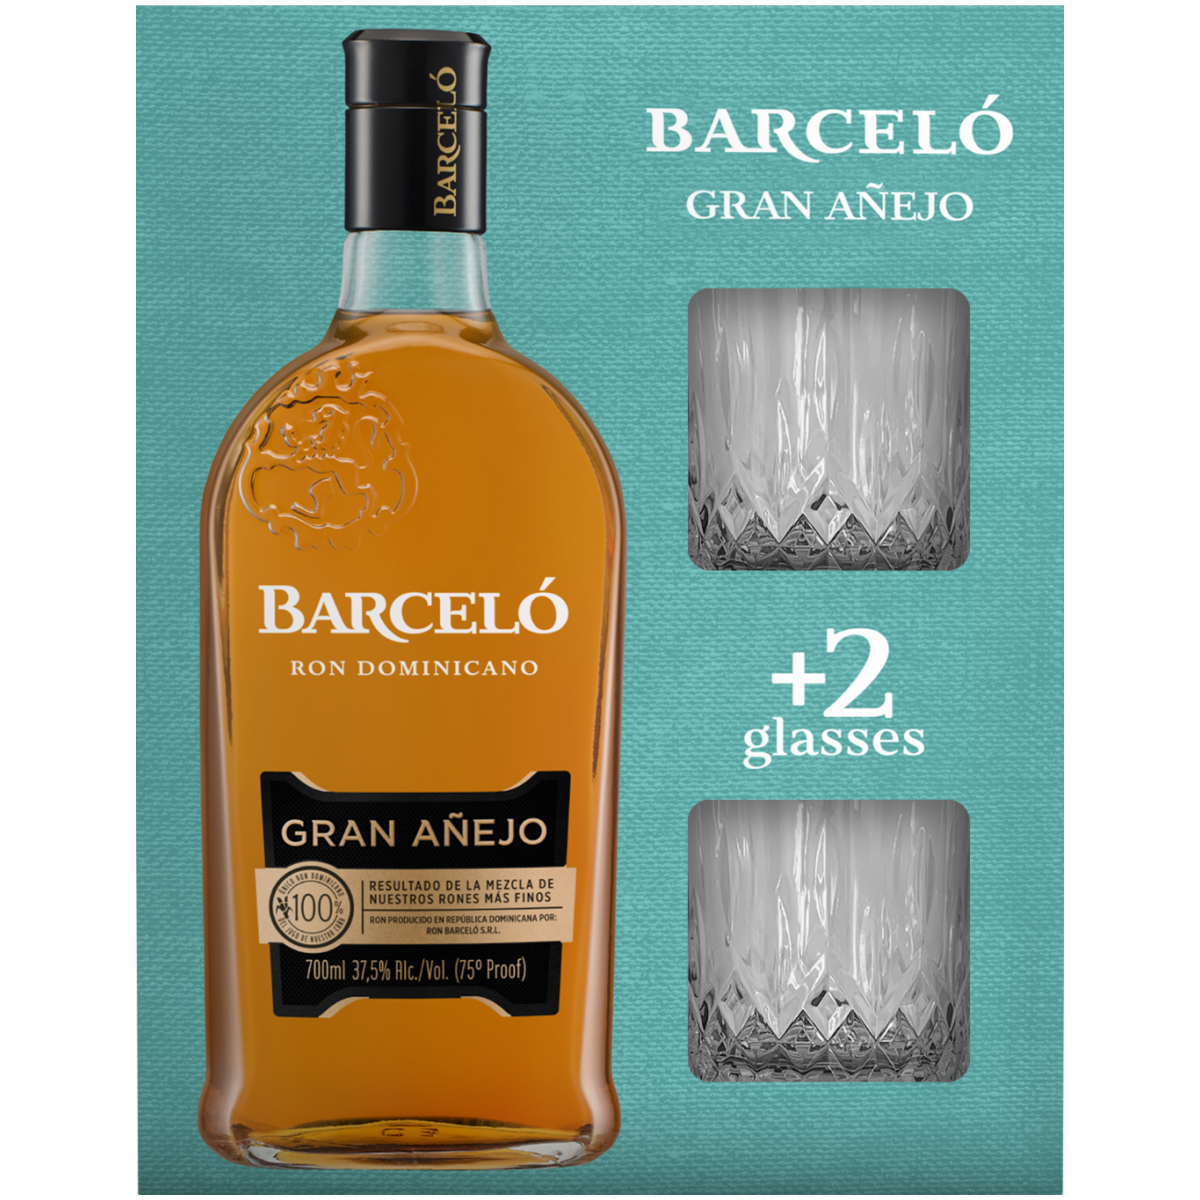 Barcelo Ром 0.7. Barcelo Gran Anejo 0.7. Barcelo Gran Anejo Ром 0.7 + 2 стакана. Ром Barcelo Gran Anejo 0,7 л. Барсело аньехо цена 0.7